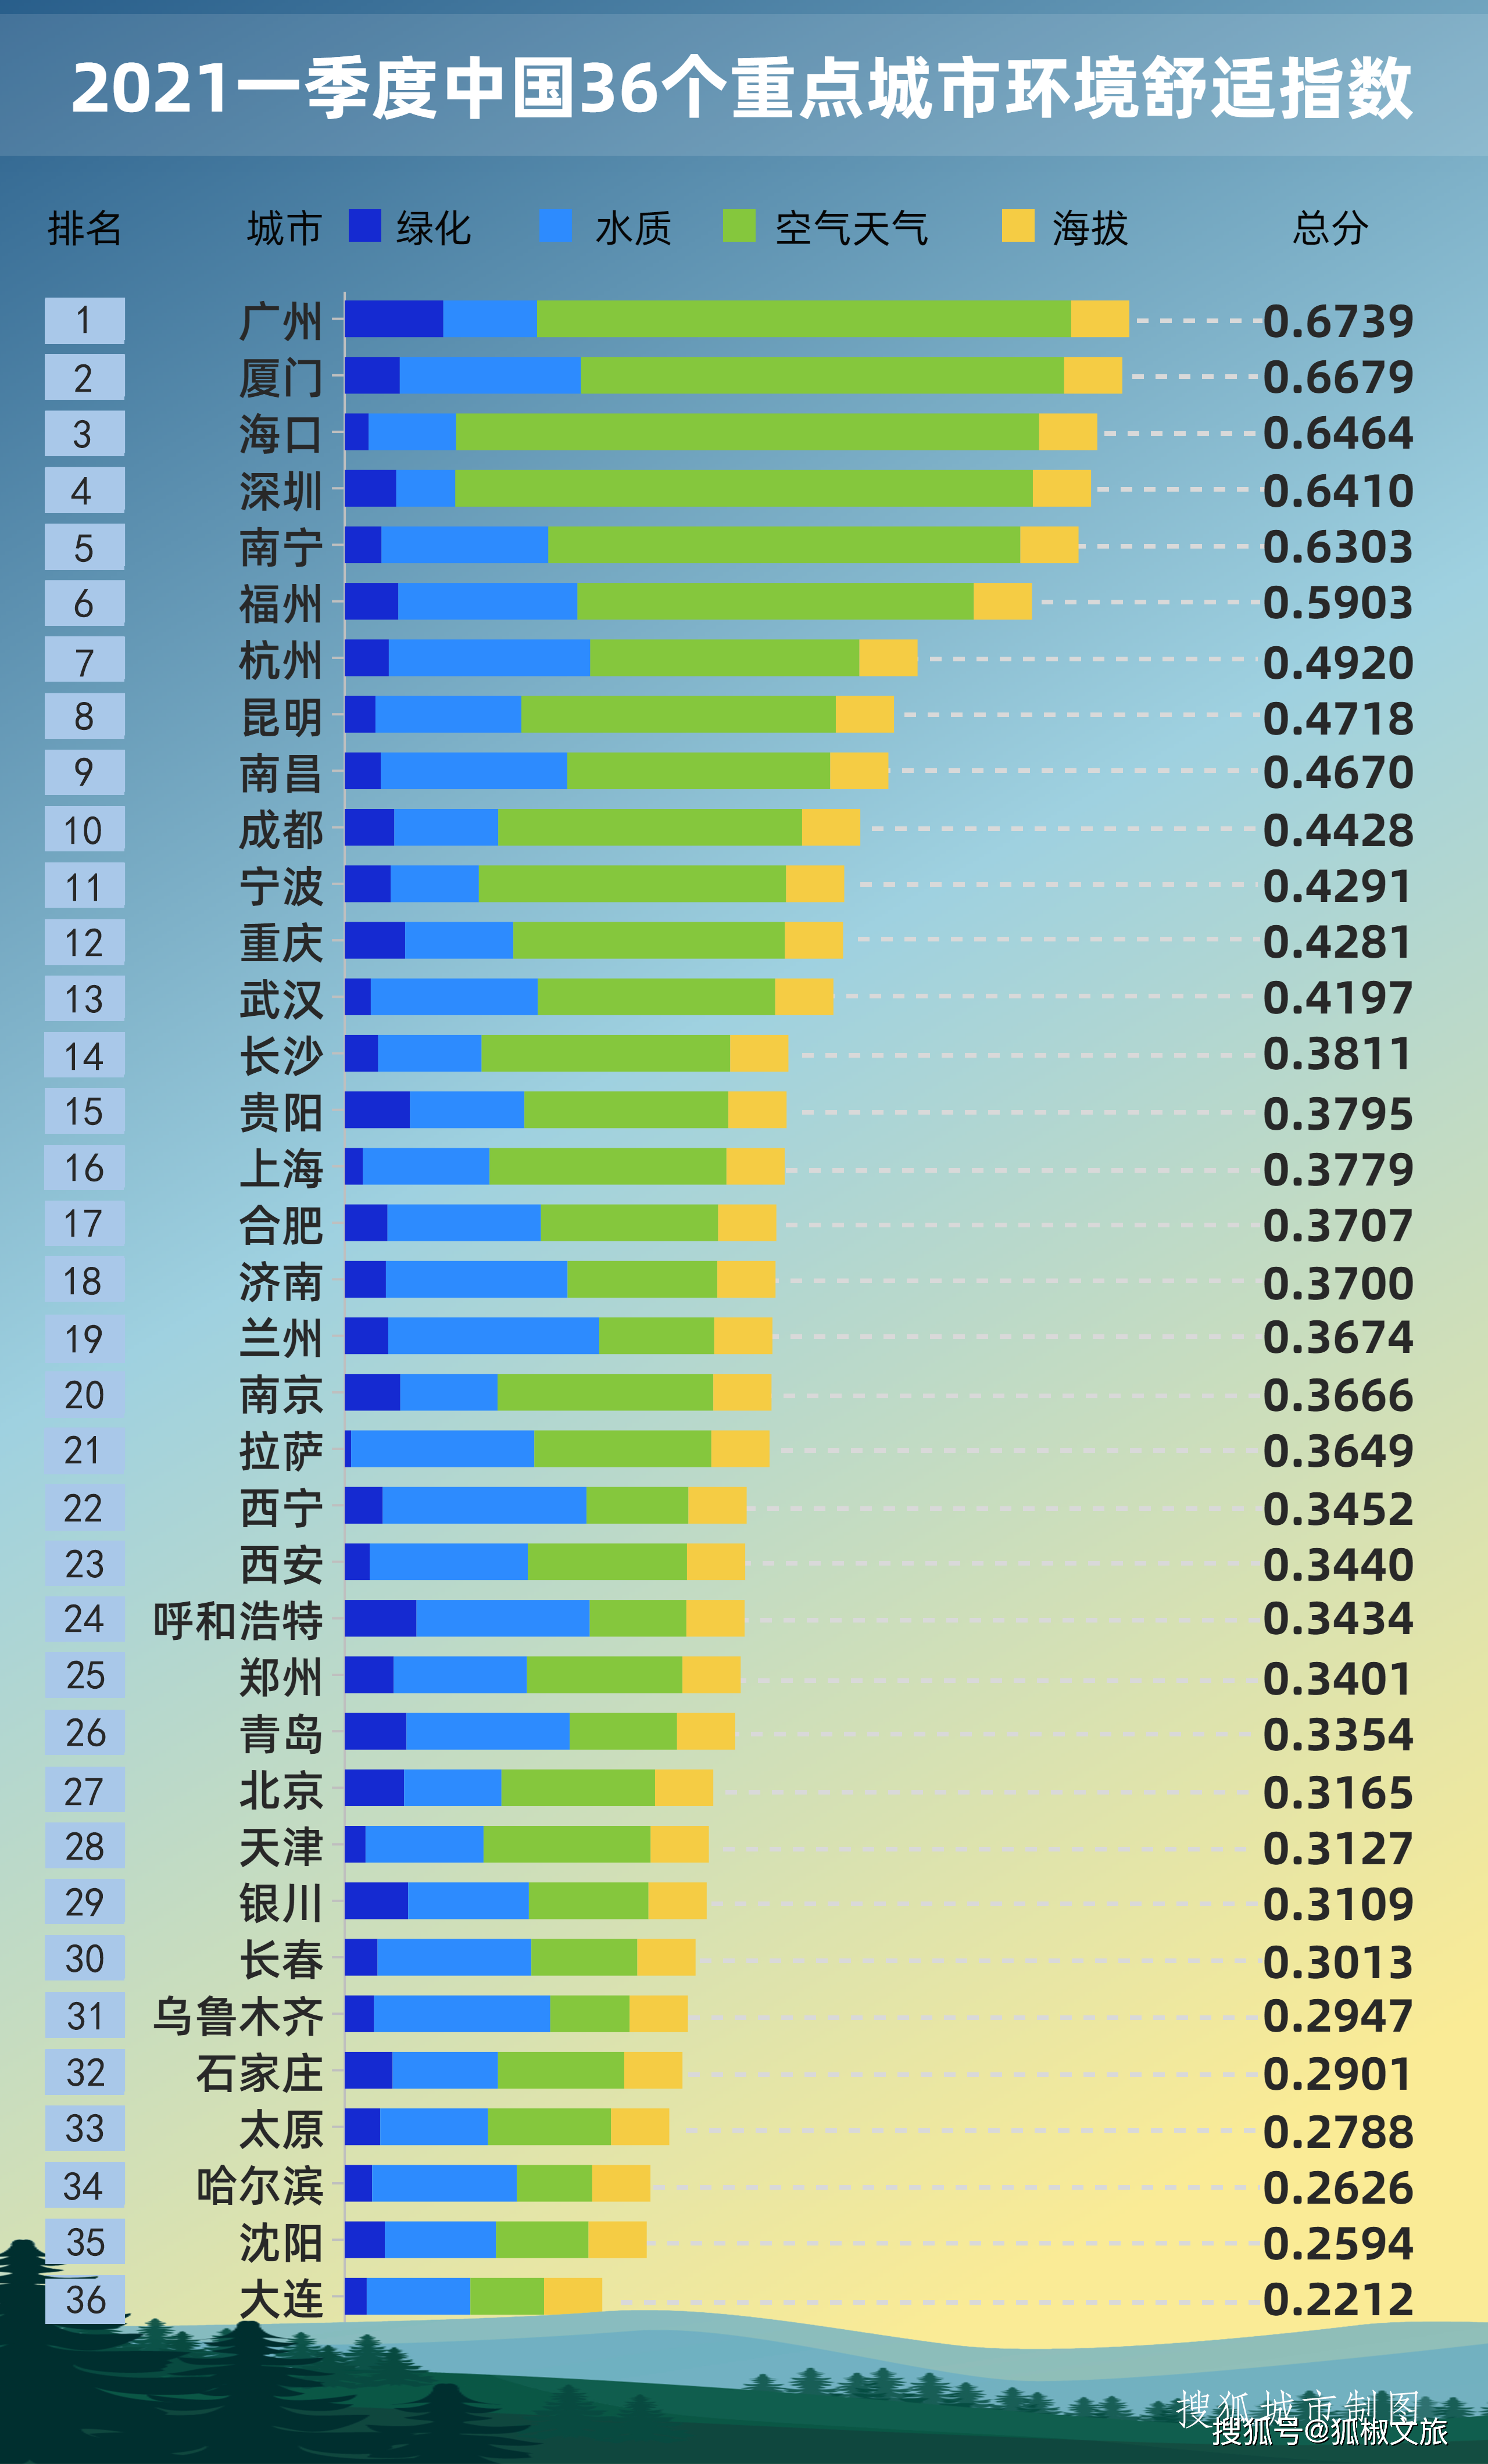 2021一季度中国重点城市环境舒适指数排名/搜狐城市制图